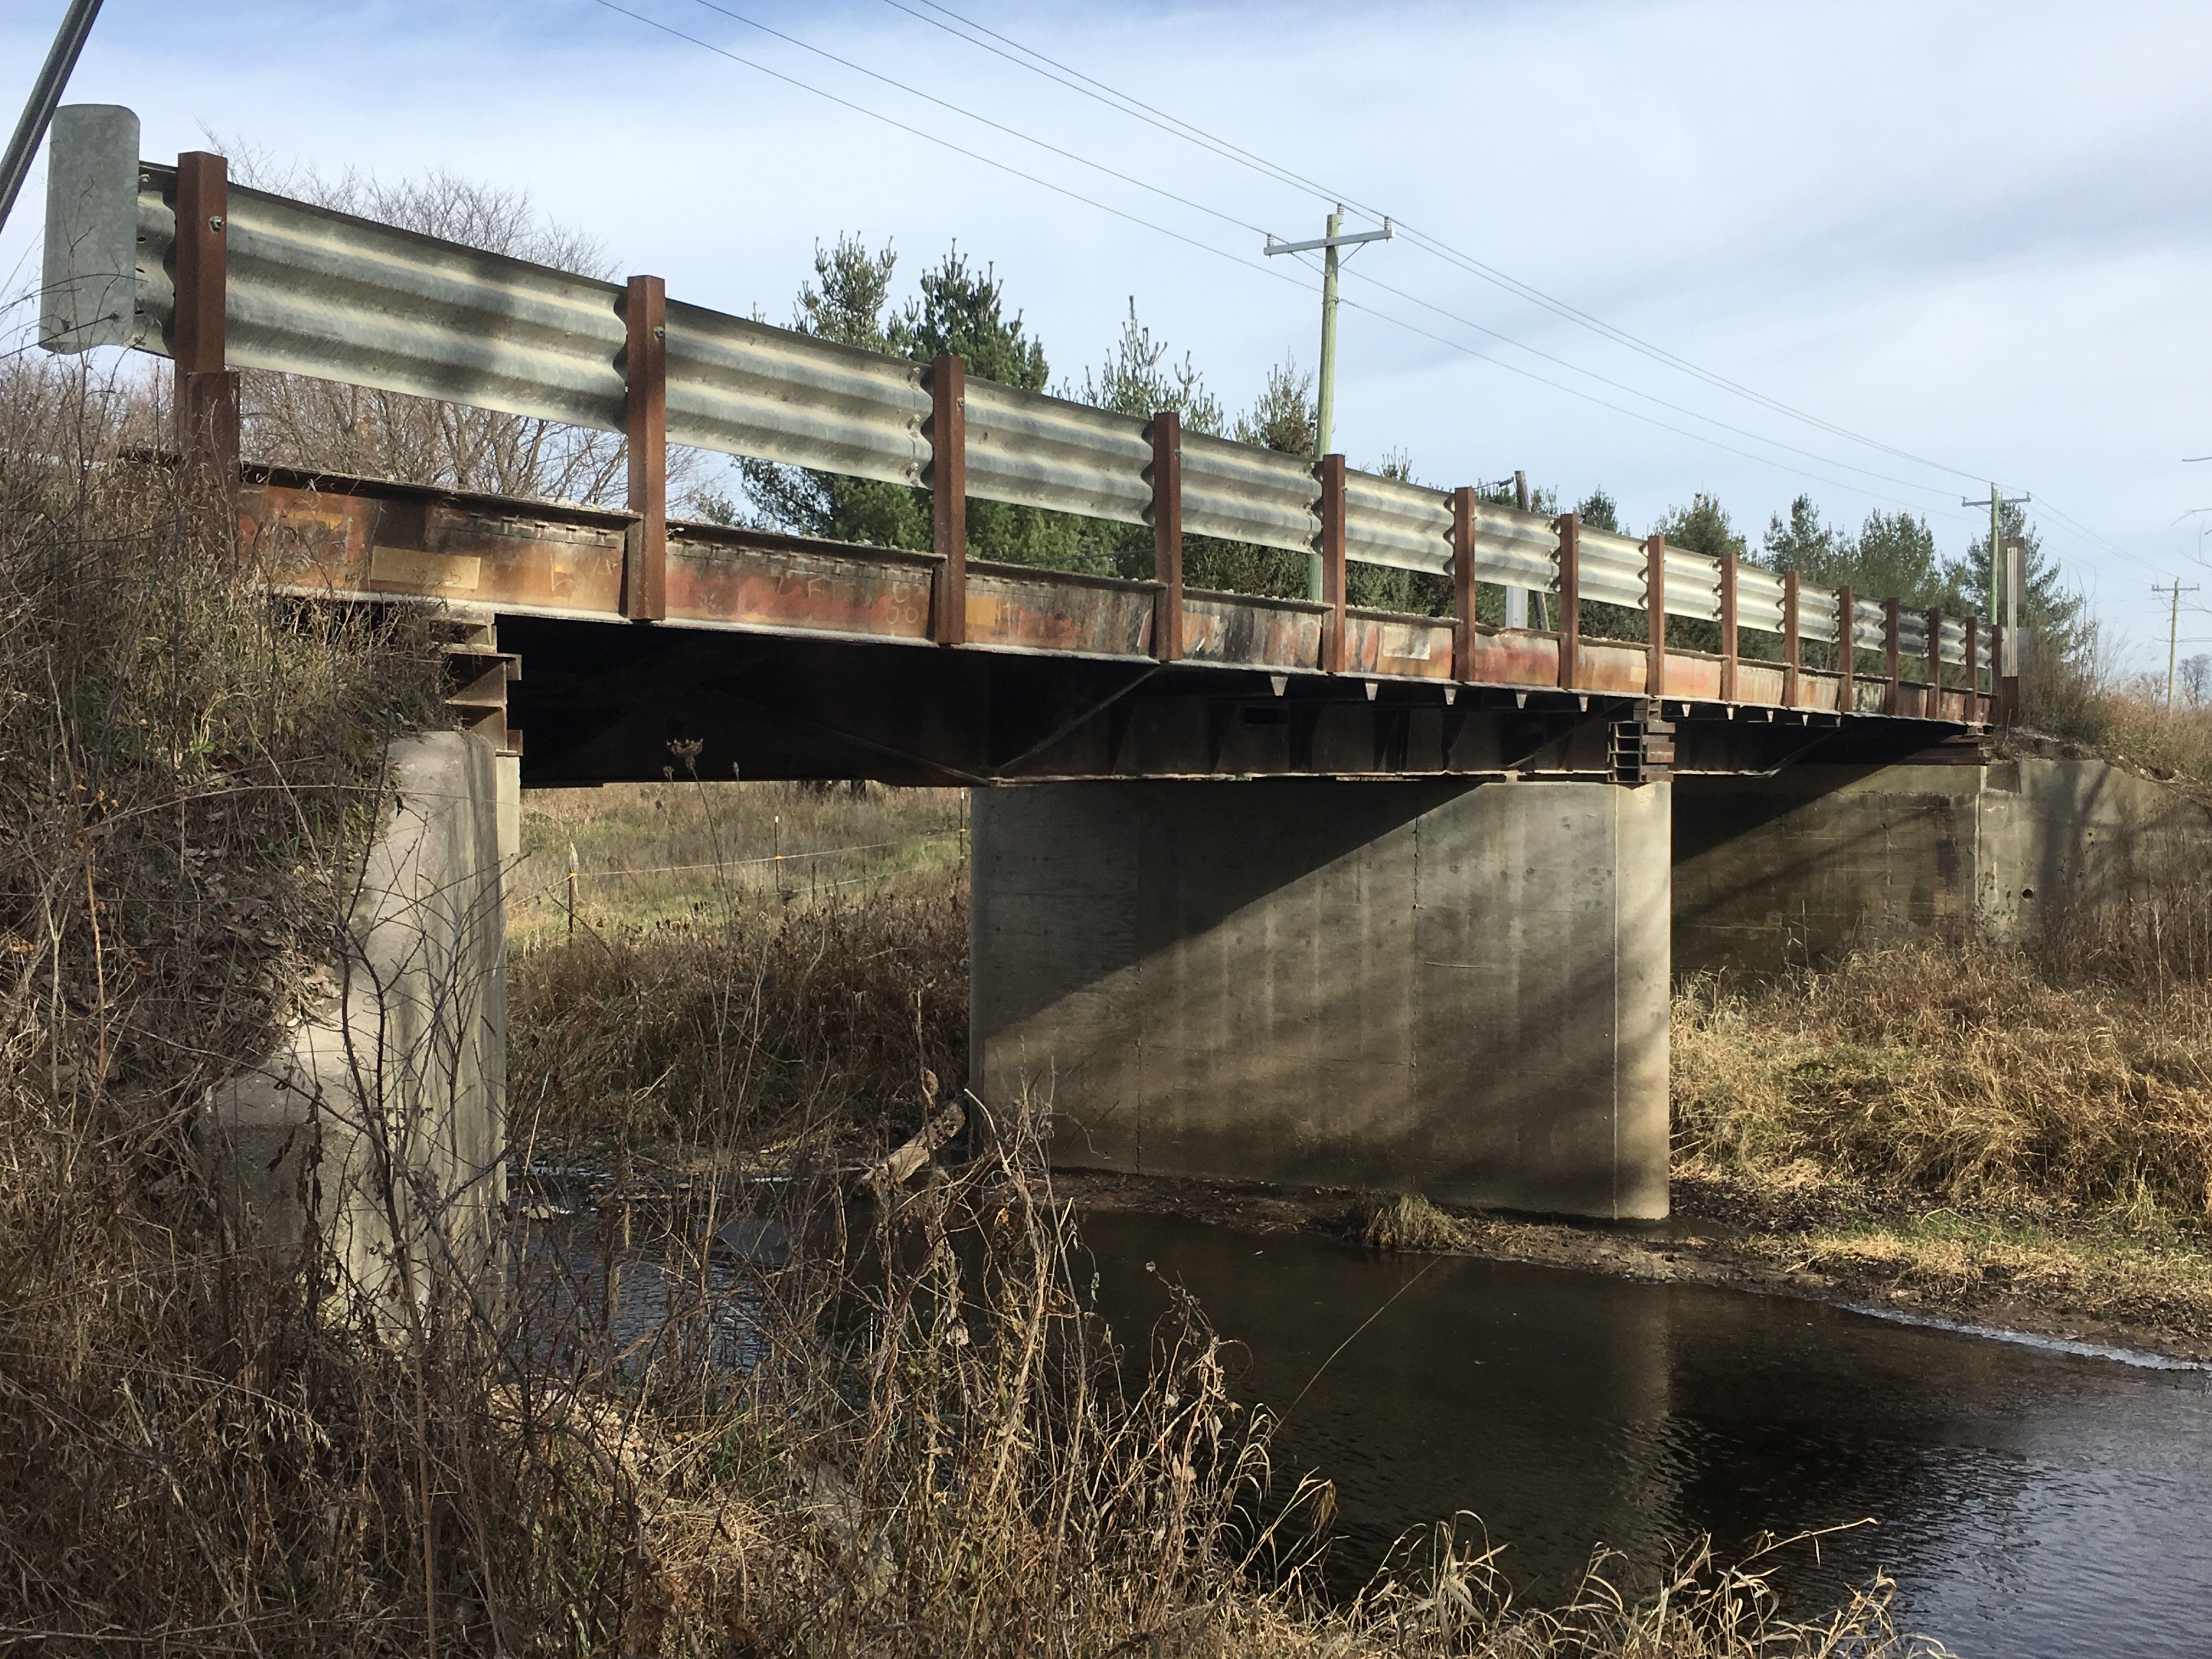 Railroad bridge over a stream